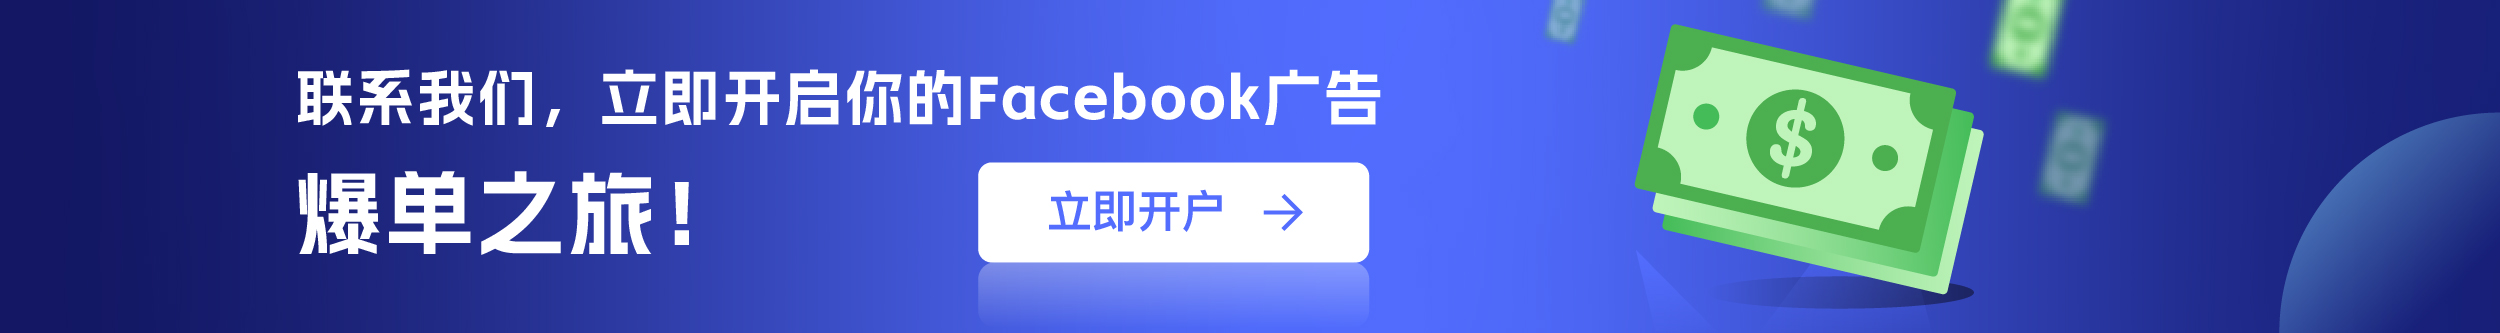 Facebook海外户开户 Facebook广告代理开户